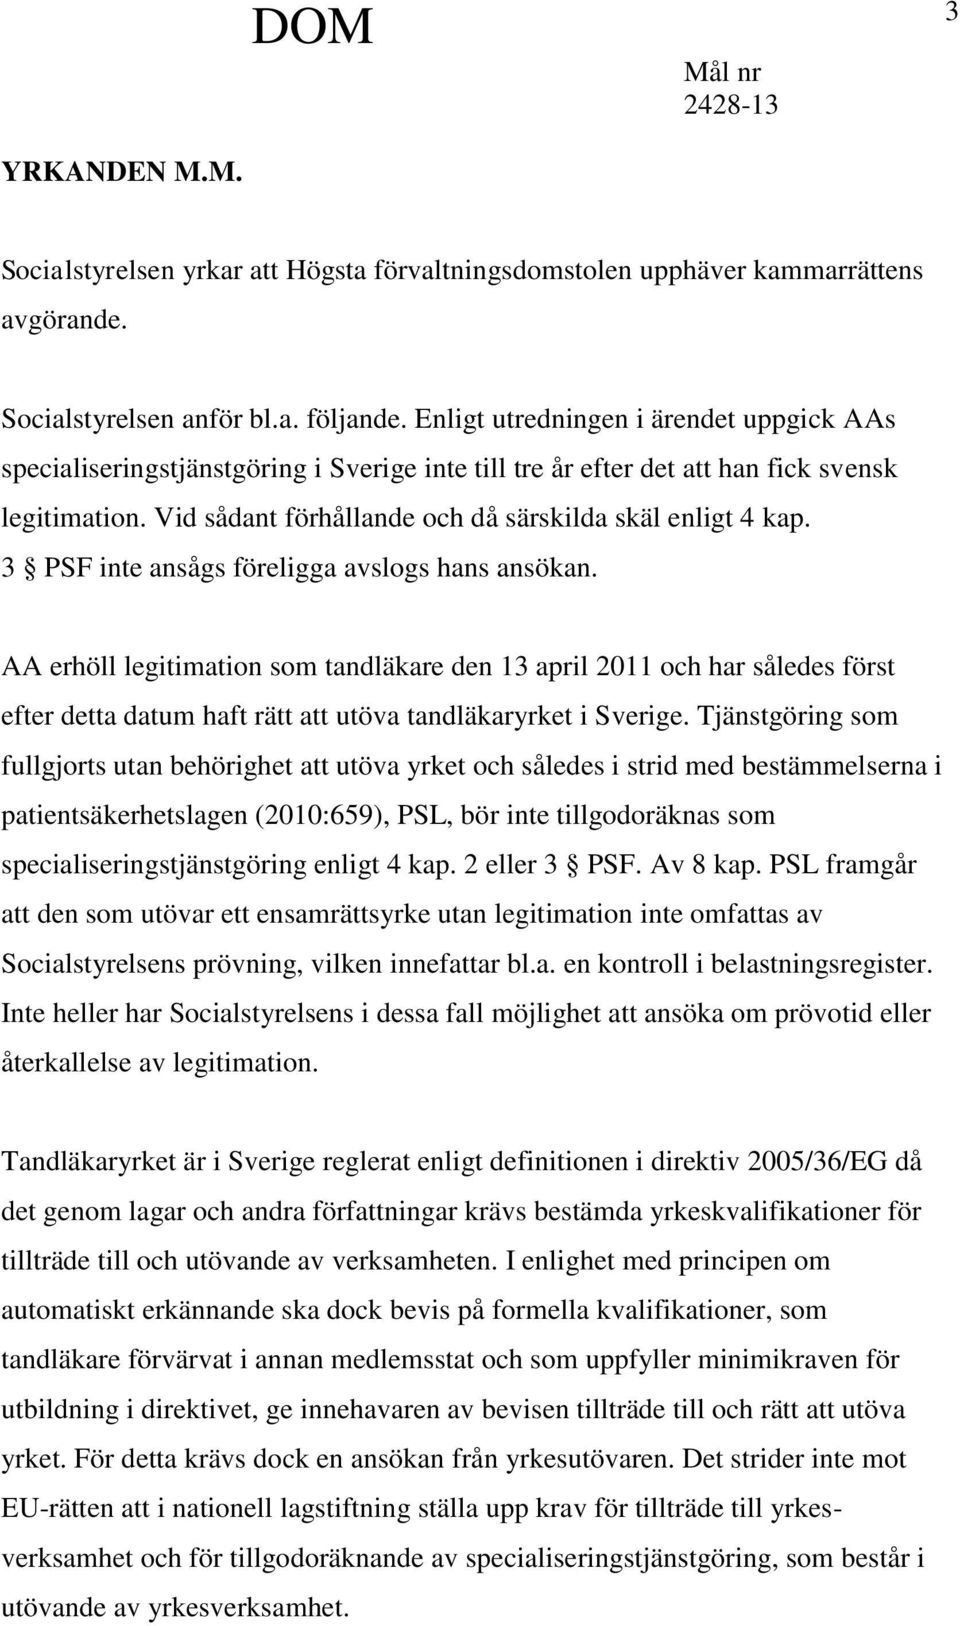 3 PSF inte ansågs föreligga avslogs hans ansökan. AA erhöll legitimation som tandläkare den 13 april 2011 och har således först efter detta datum haft rätt att utöva tandläkaryrket i Sverige.